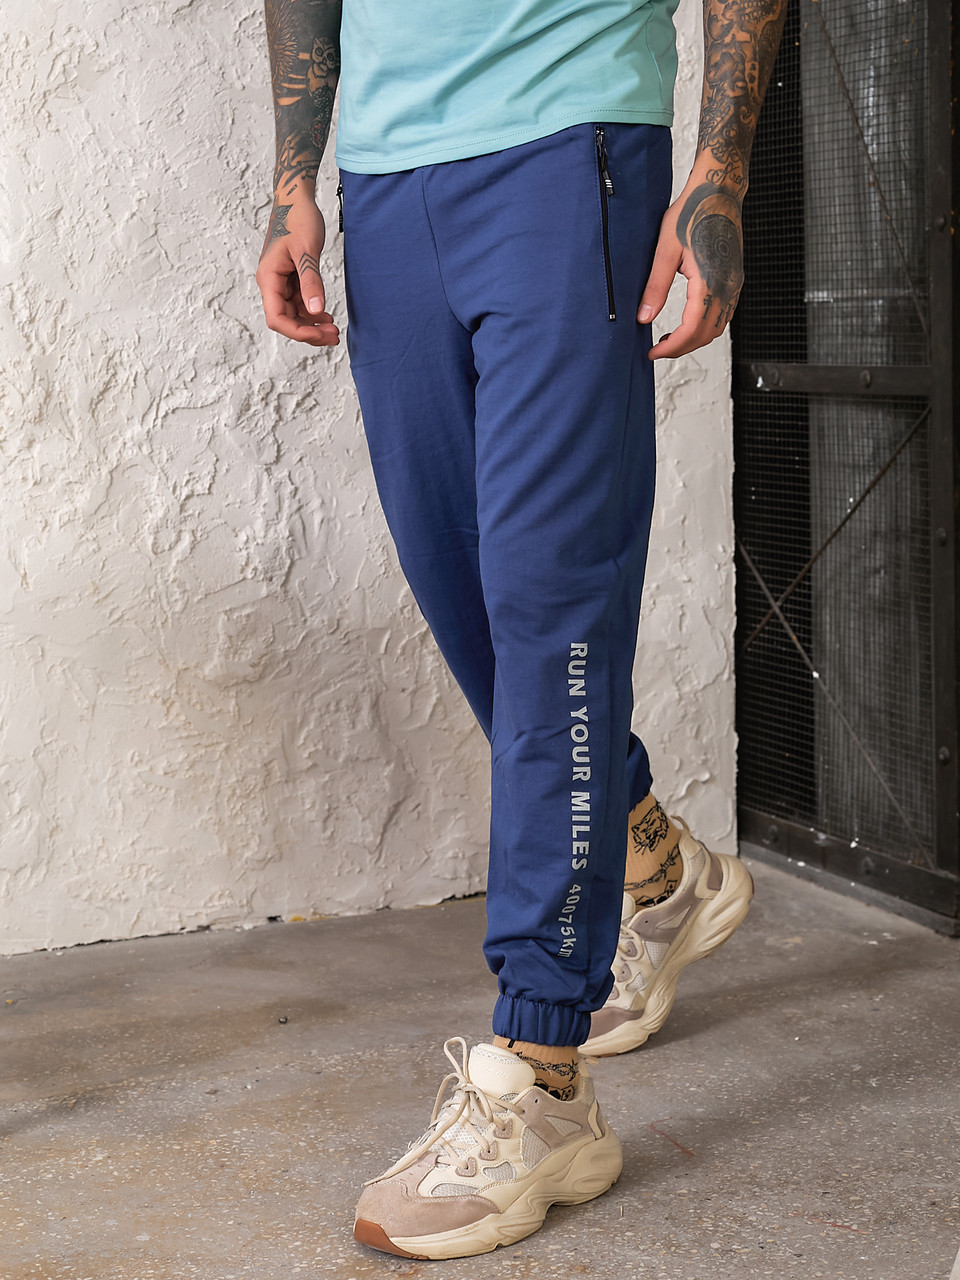 Чоловічі спортивні штани з манжетами з турецького трикотажу Tailer розміри 46-54